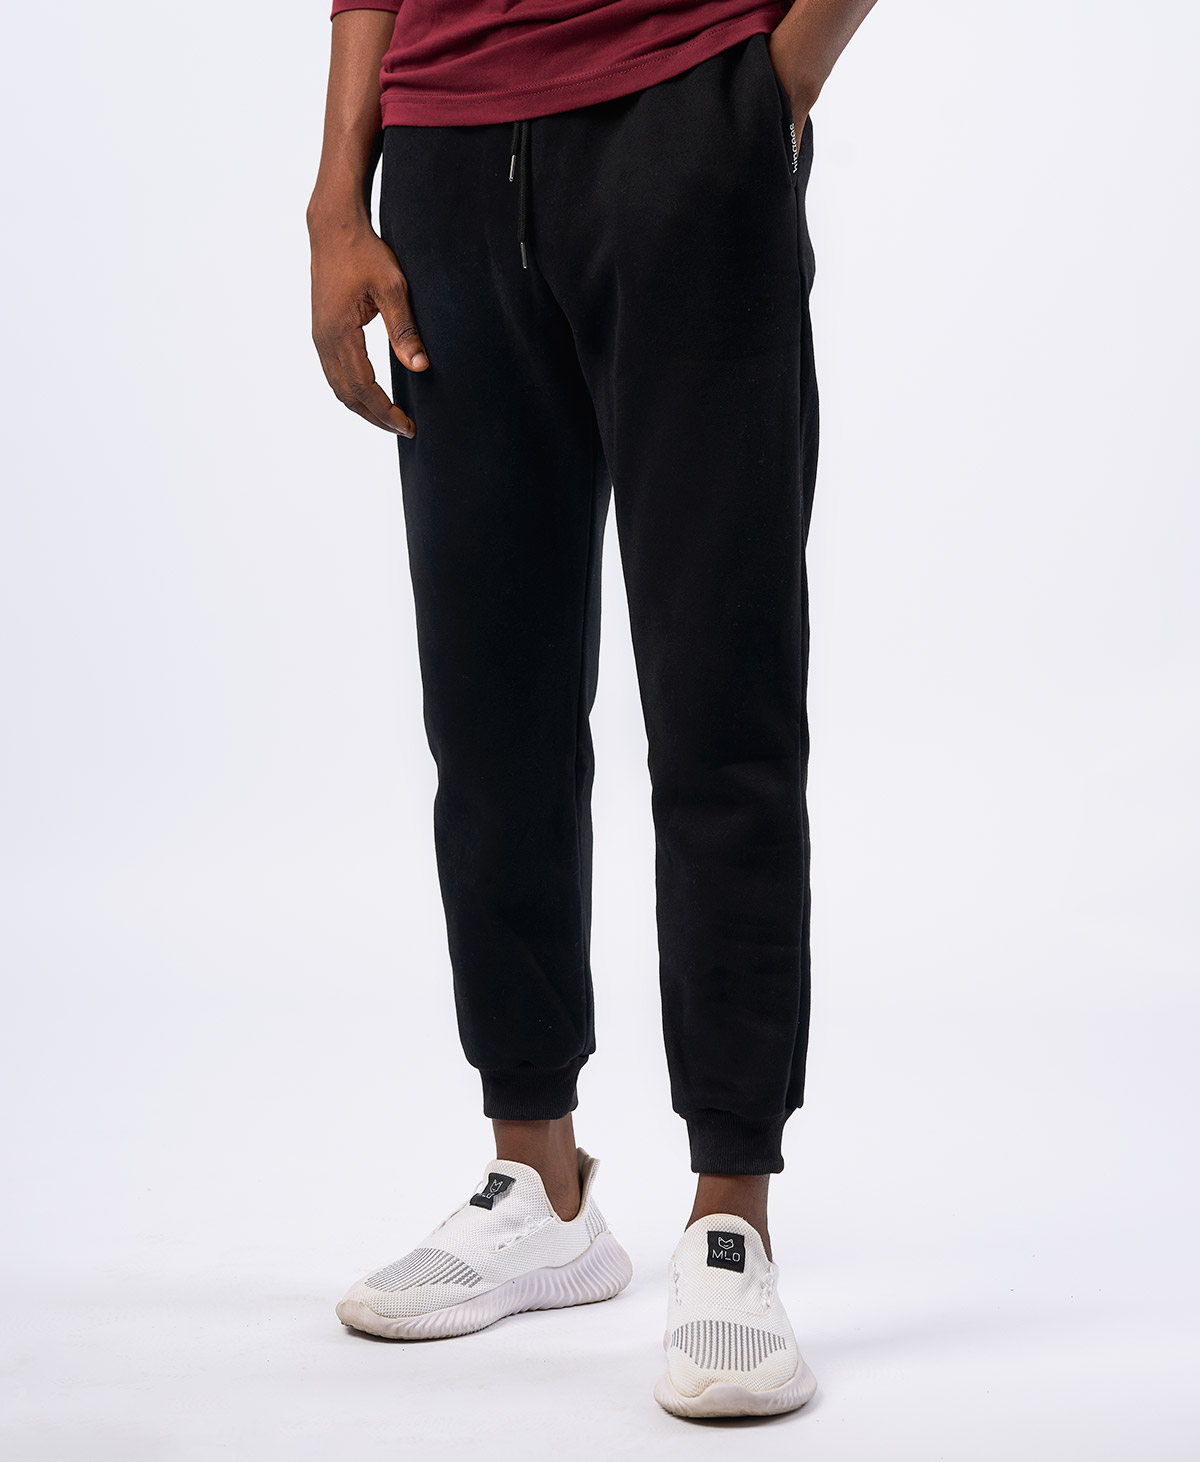 Sweatpants, Black Soft Washable Polyester FitnessJoggers Stylish